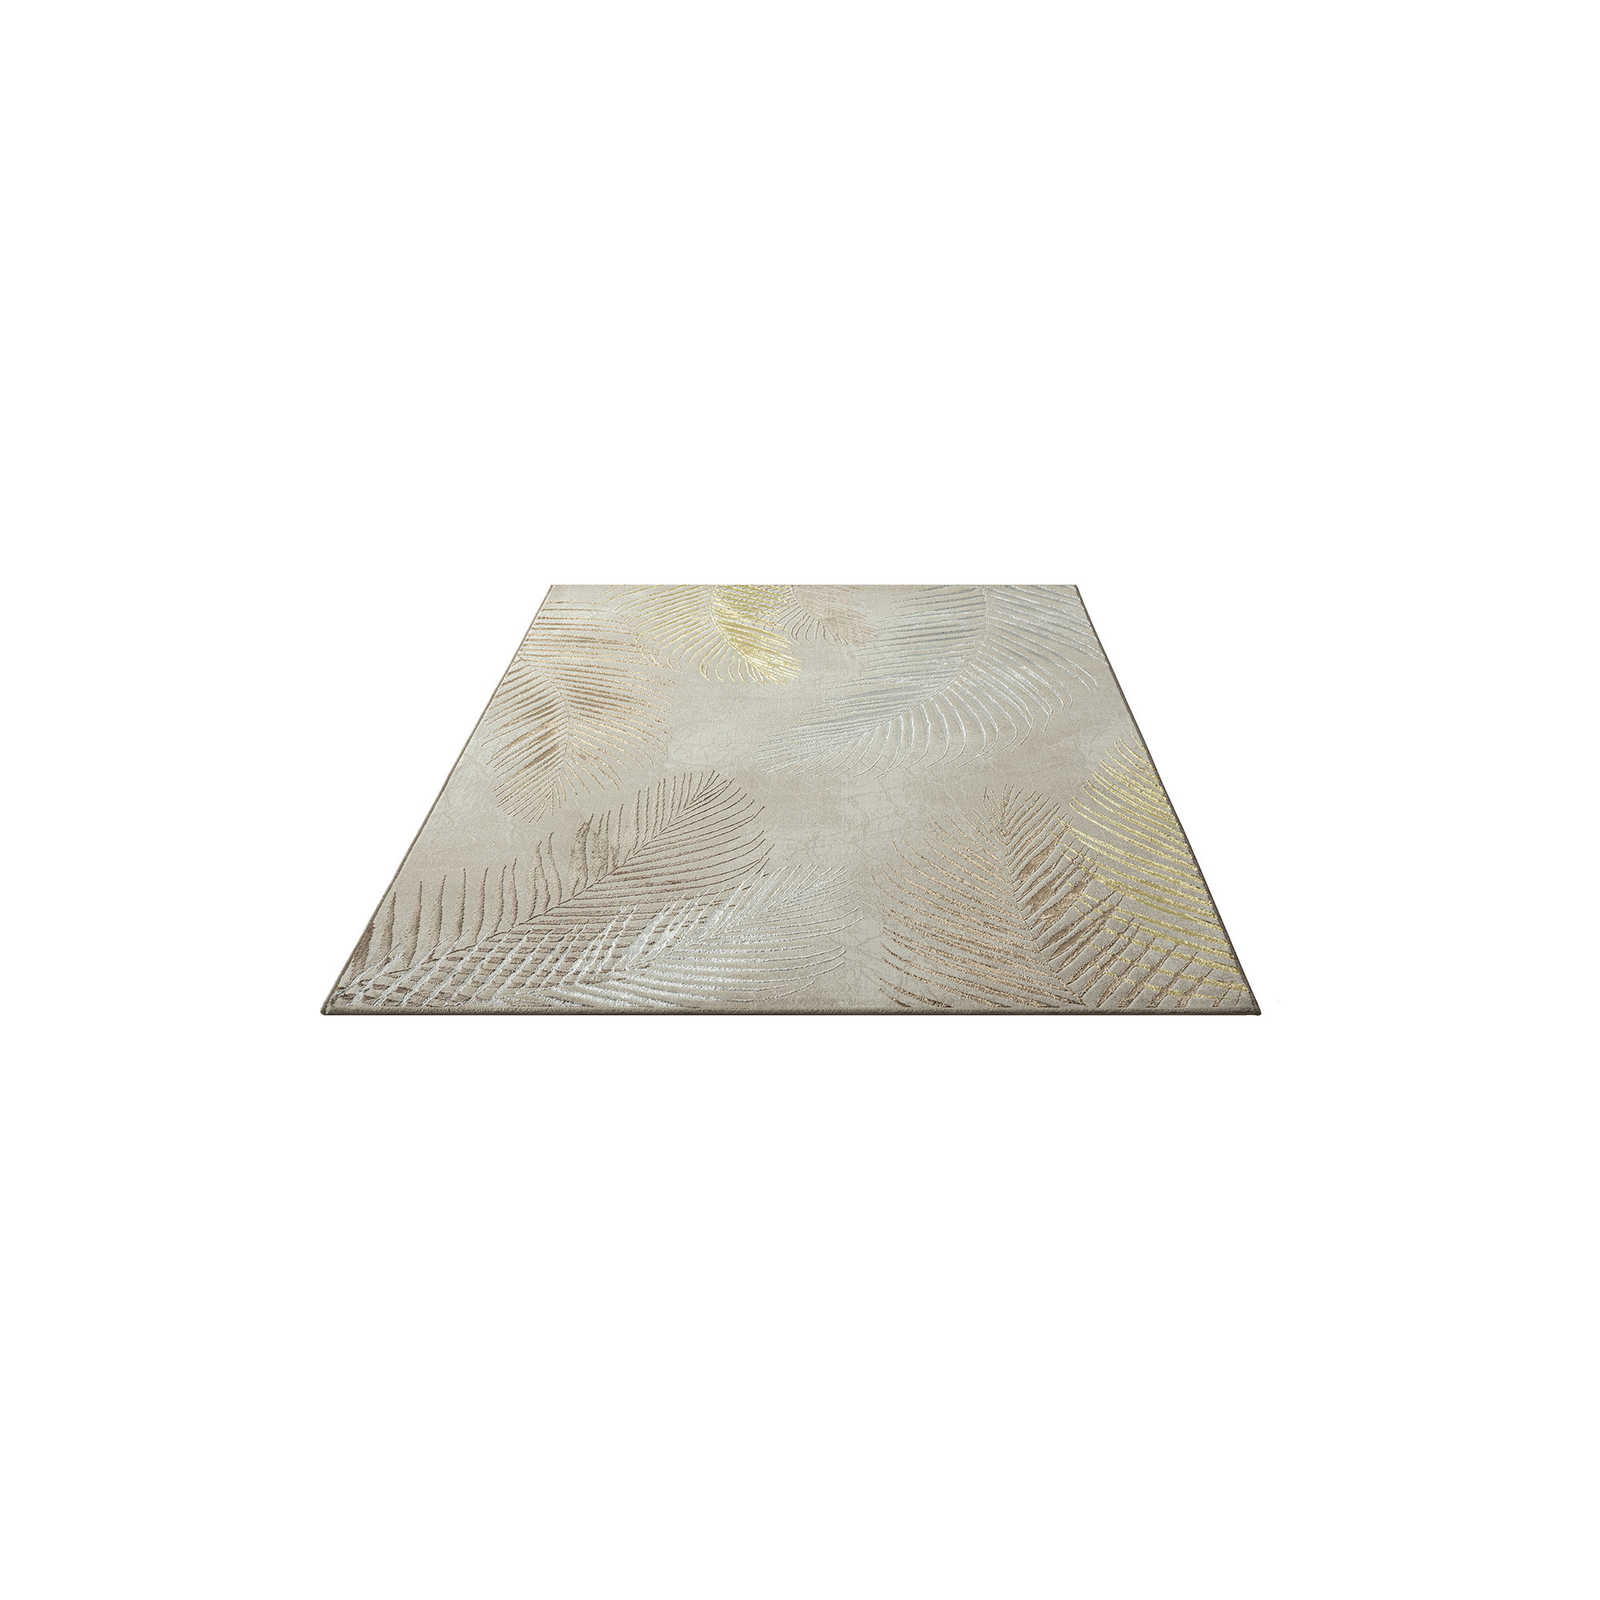 zacht crèmekleurig hoogpolig tapijt - 200 x 140 cm
